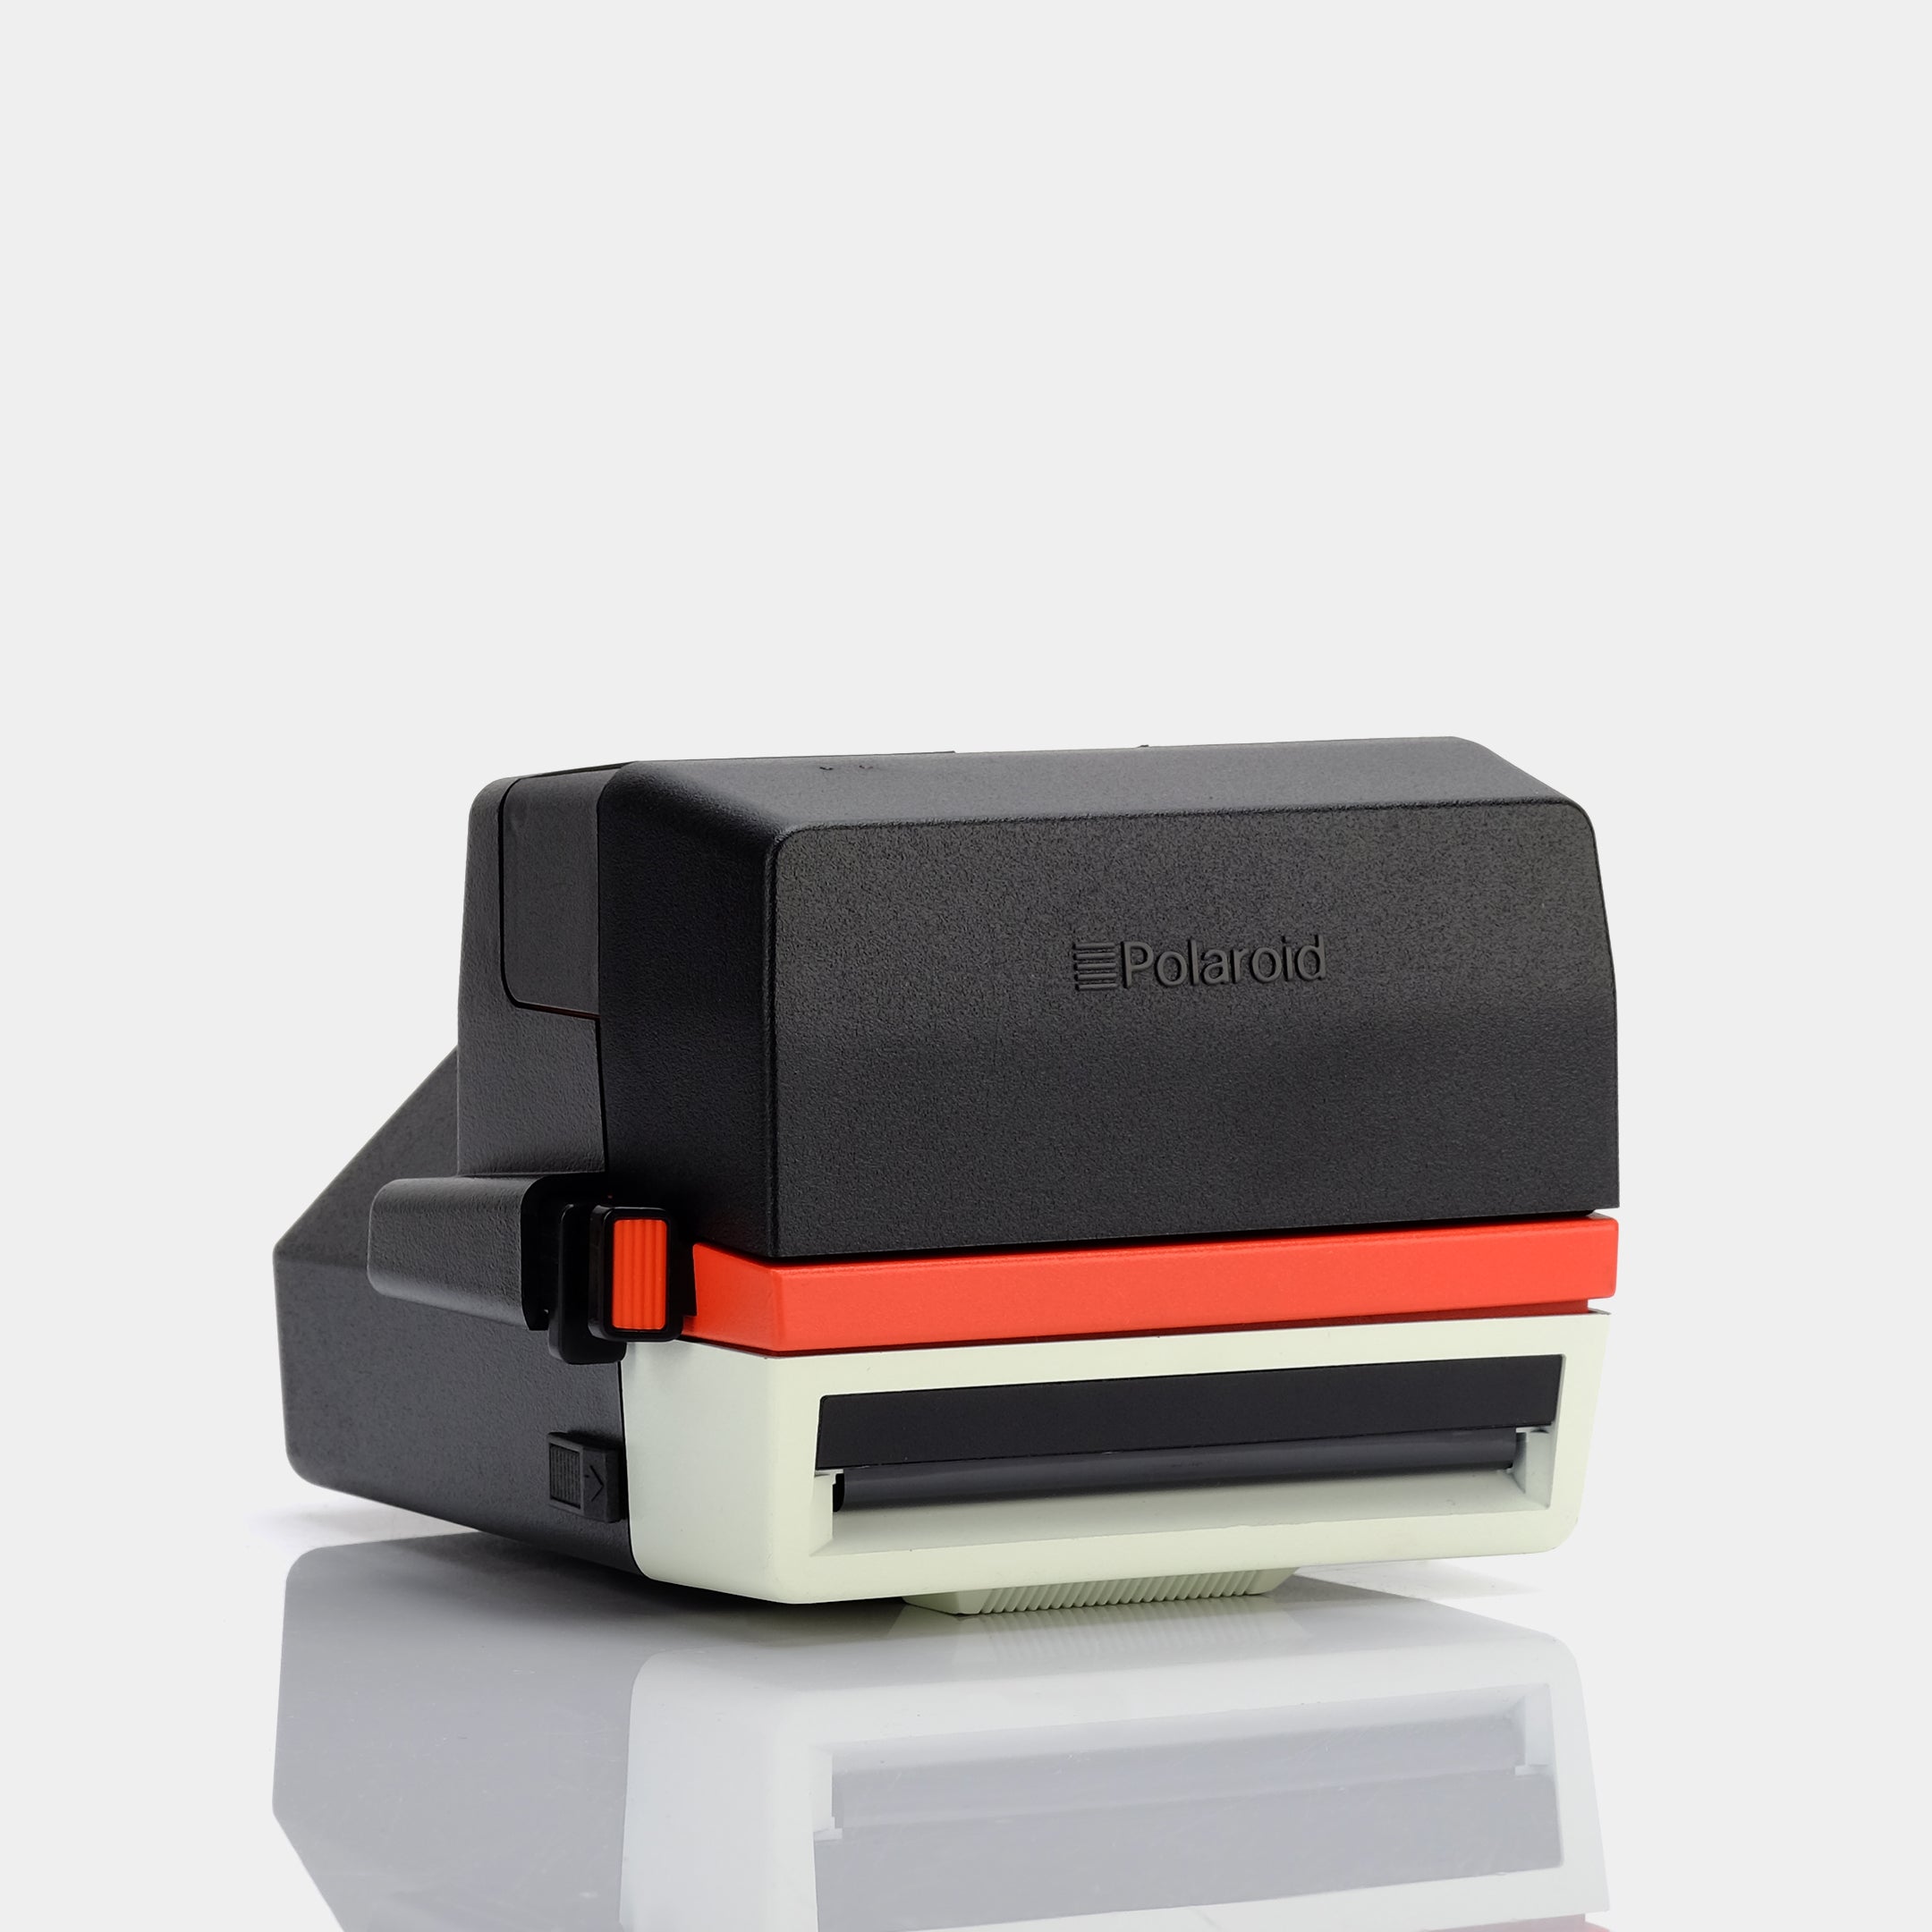 Polaroid 600 Tennis Red Instant Film Camera